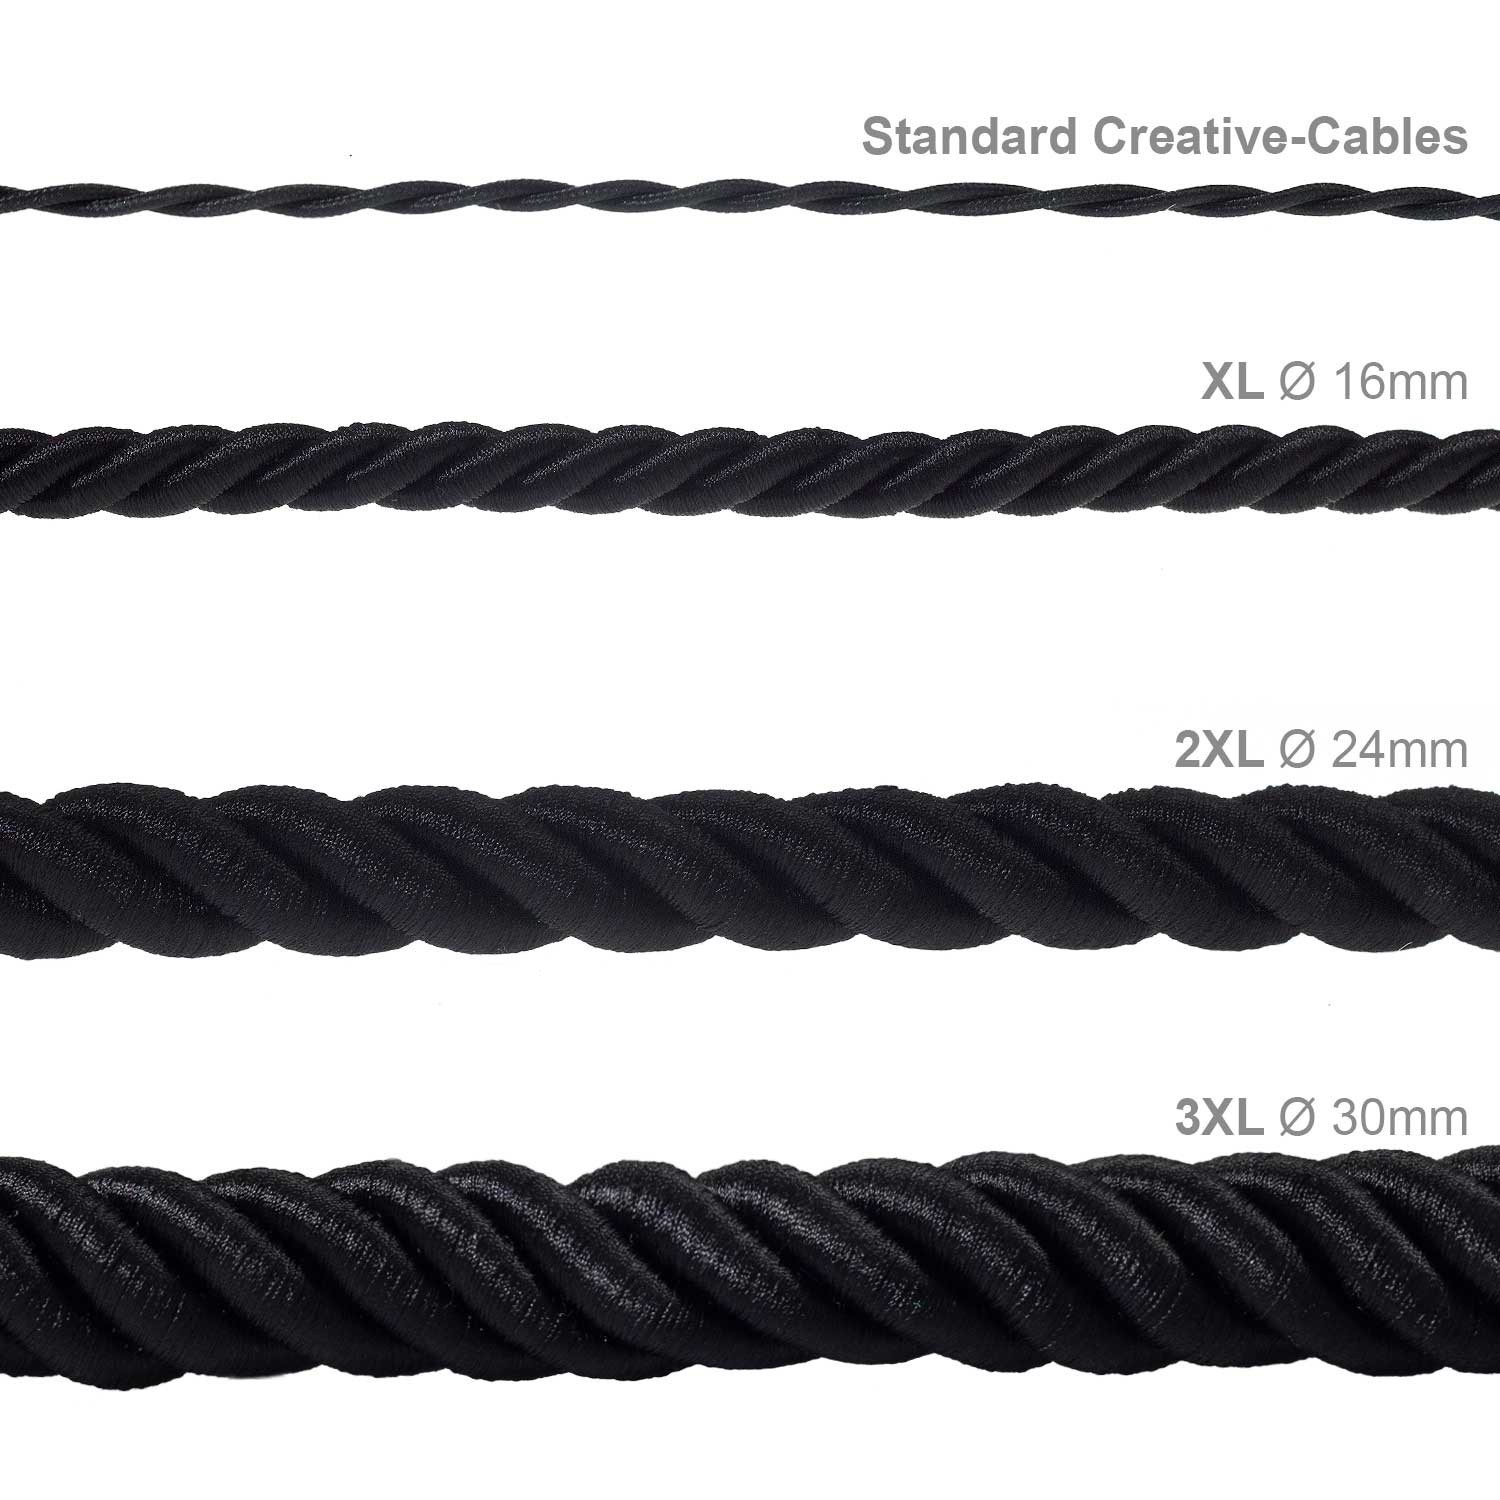 2XL električna vrv, električen kabel 3x0,75, prekrit s črnim svetlečim blagom. Premer 24mm.